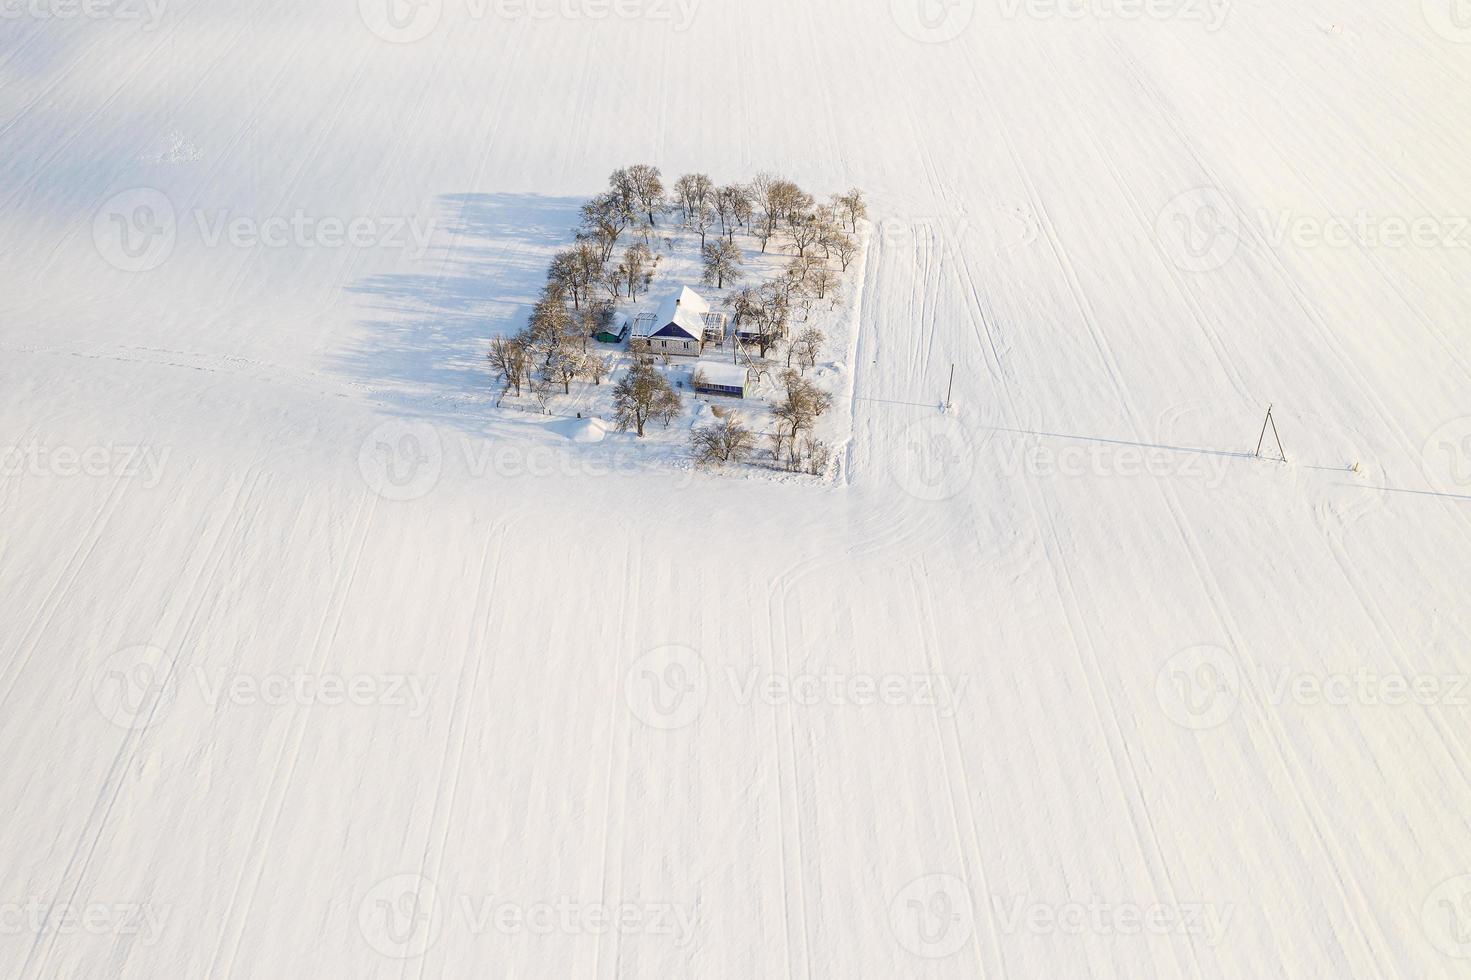 casa solitária no meio de uma vista superior do campo coberto de neve. foto